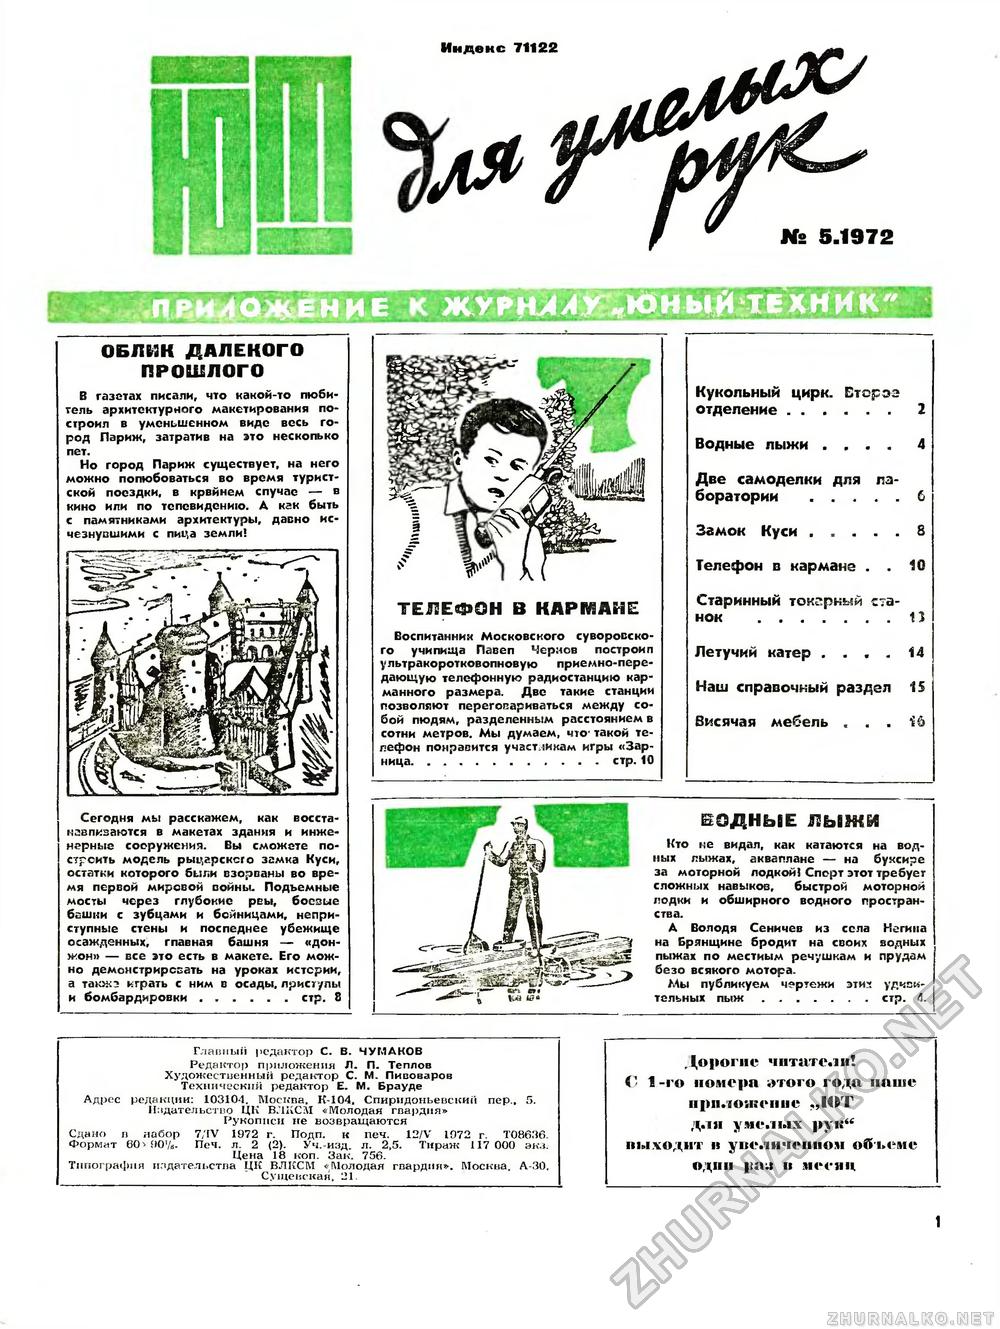 Юный техник - для умелых рук 1972-05, страница 1